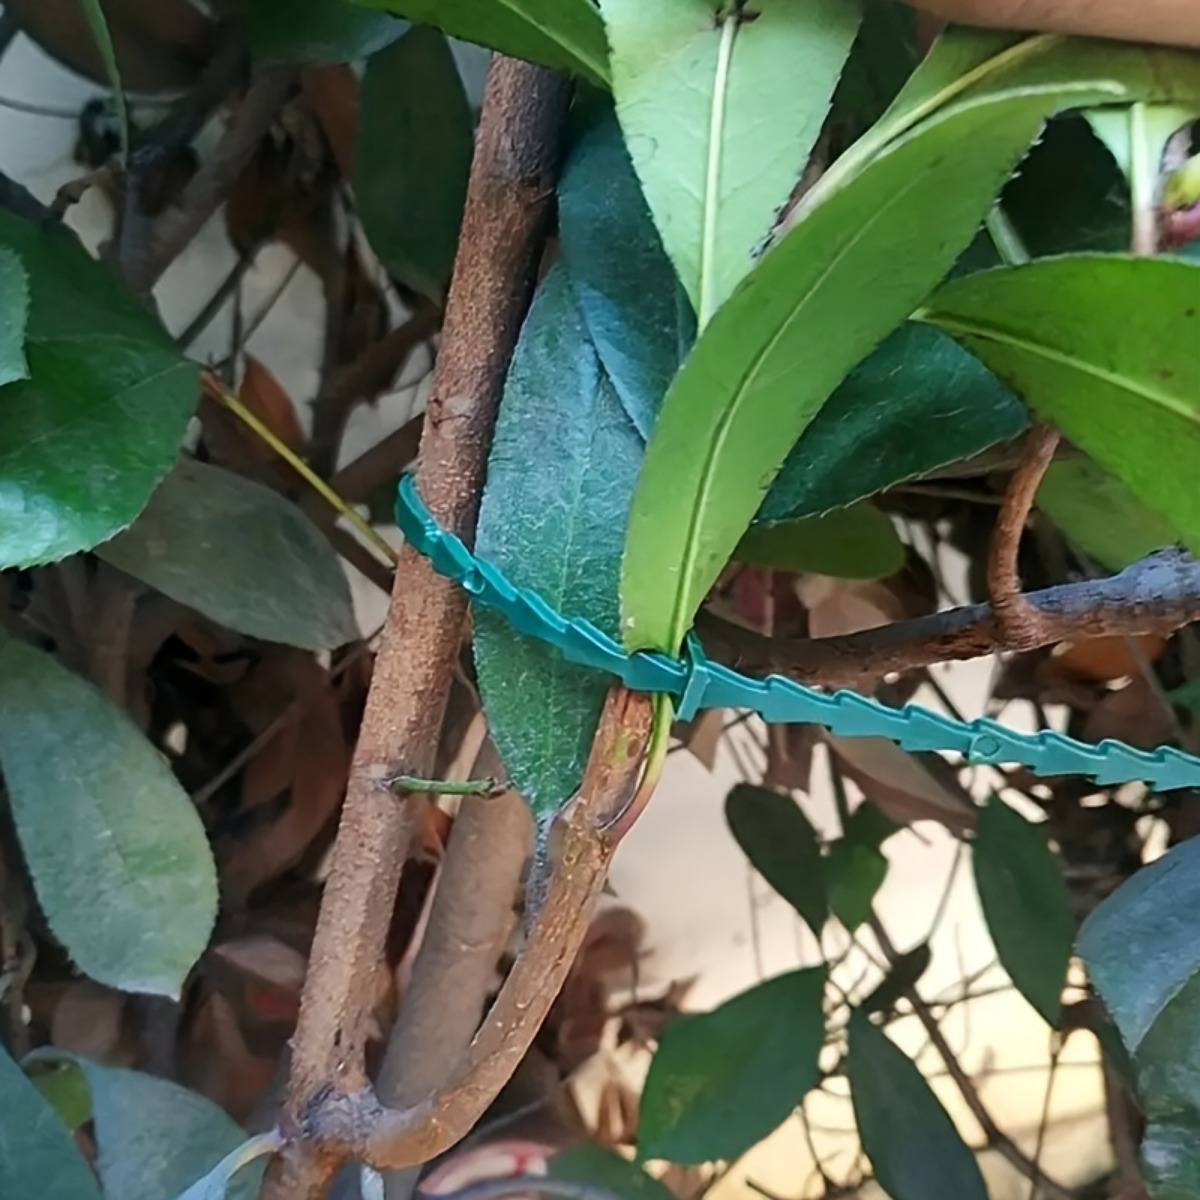 

80pcs, Adjustable Garden Plant Twist Ties, Flexible Plastic Twist Ties Reusable Multi-use For Indoor Outdoor Secure Vine, Green